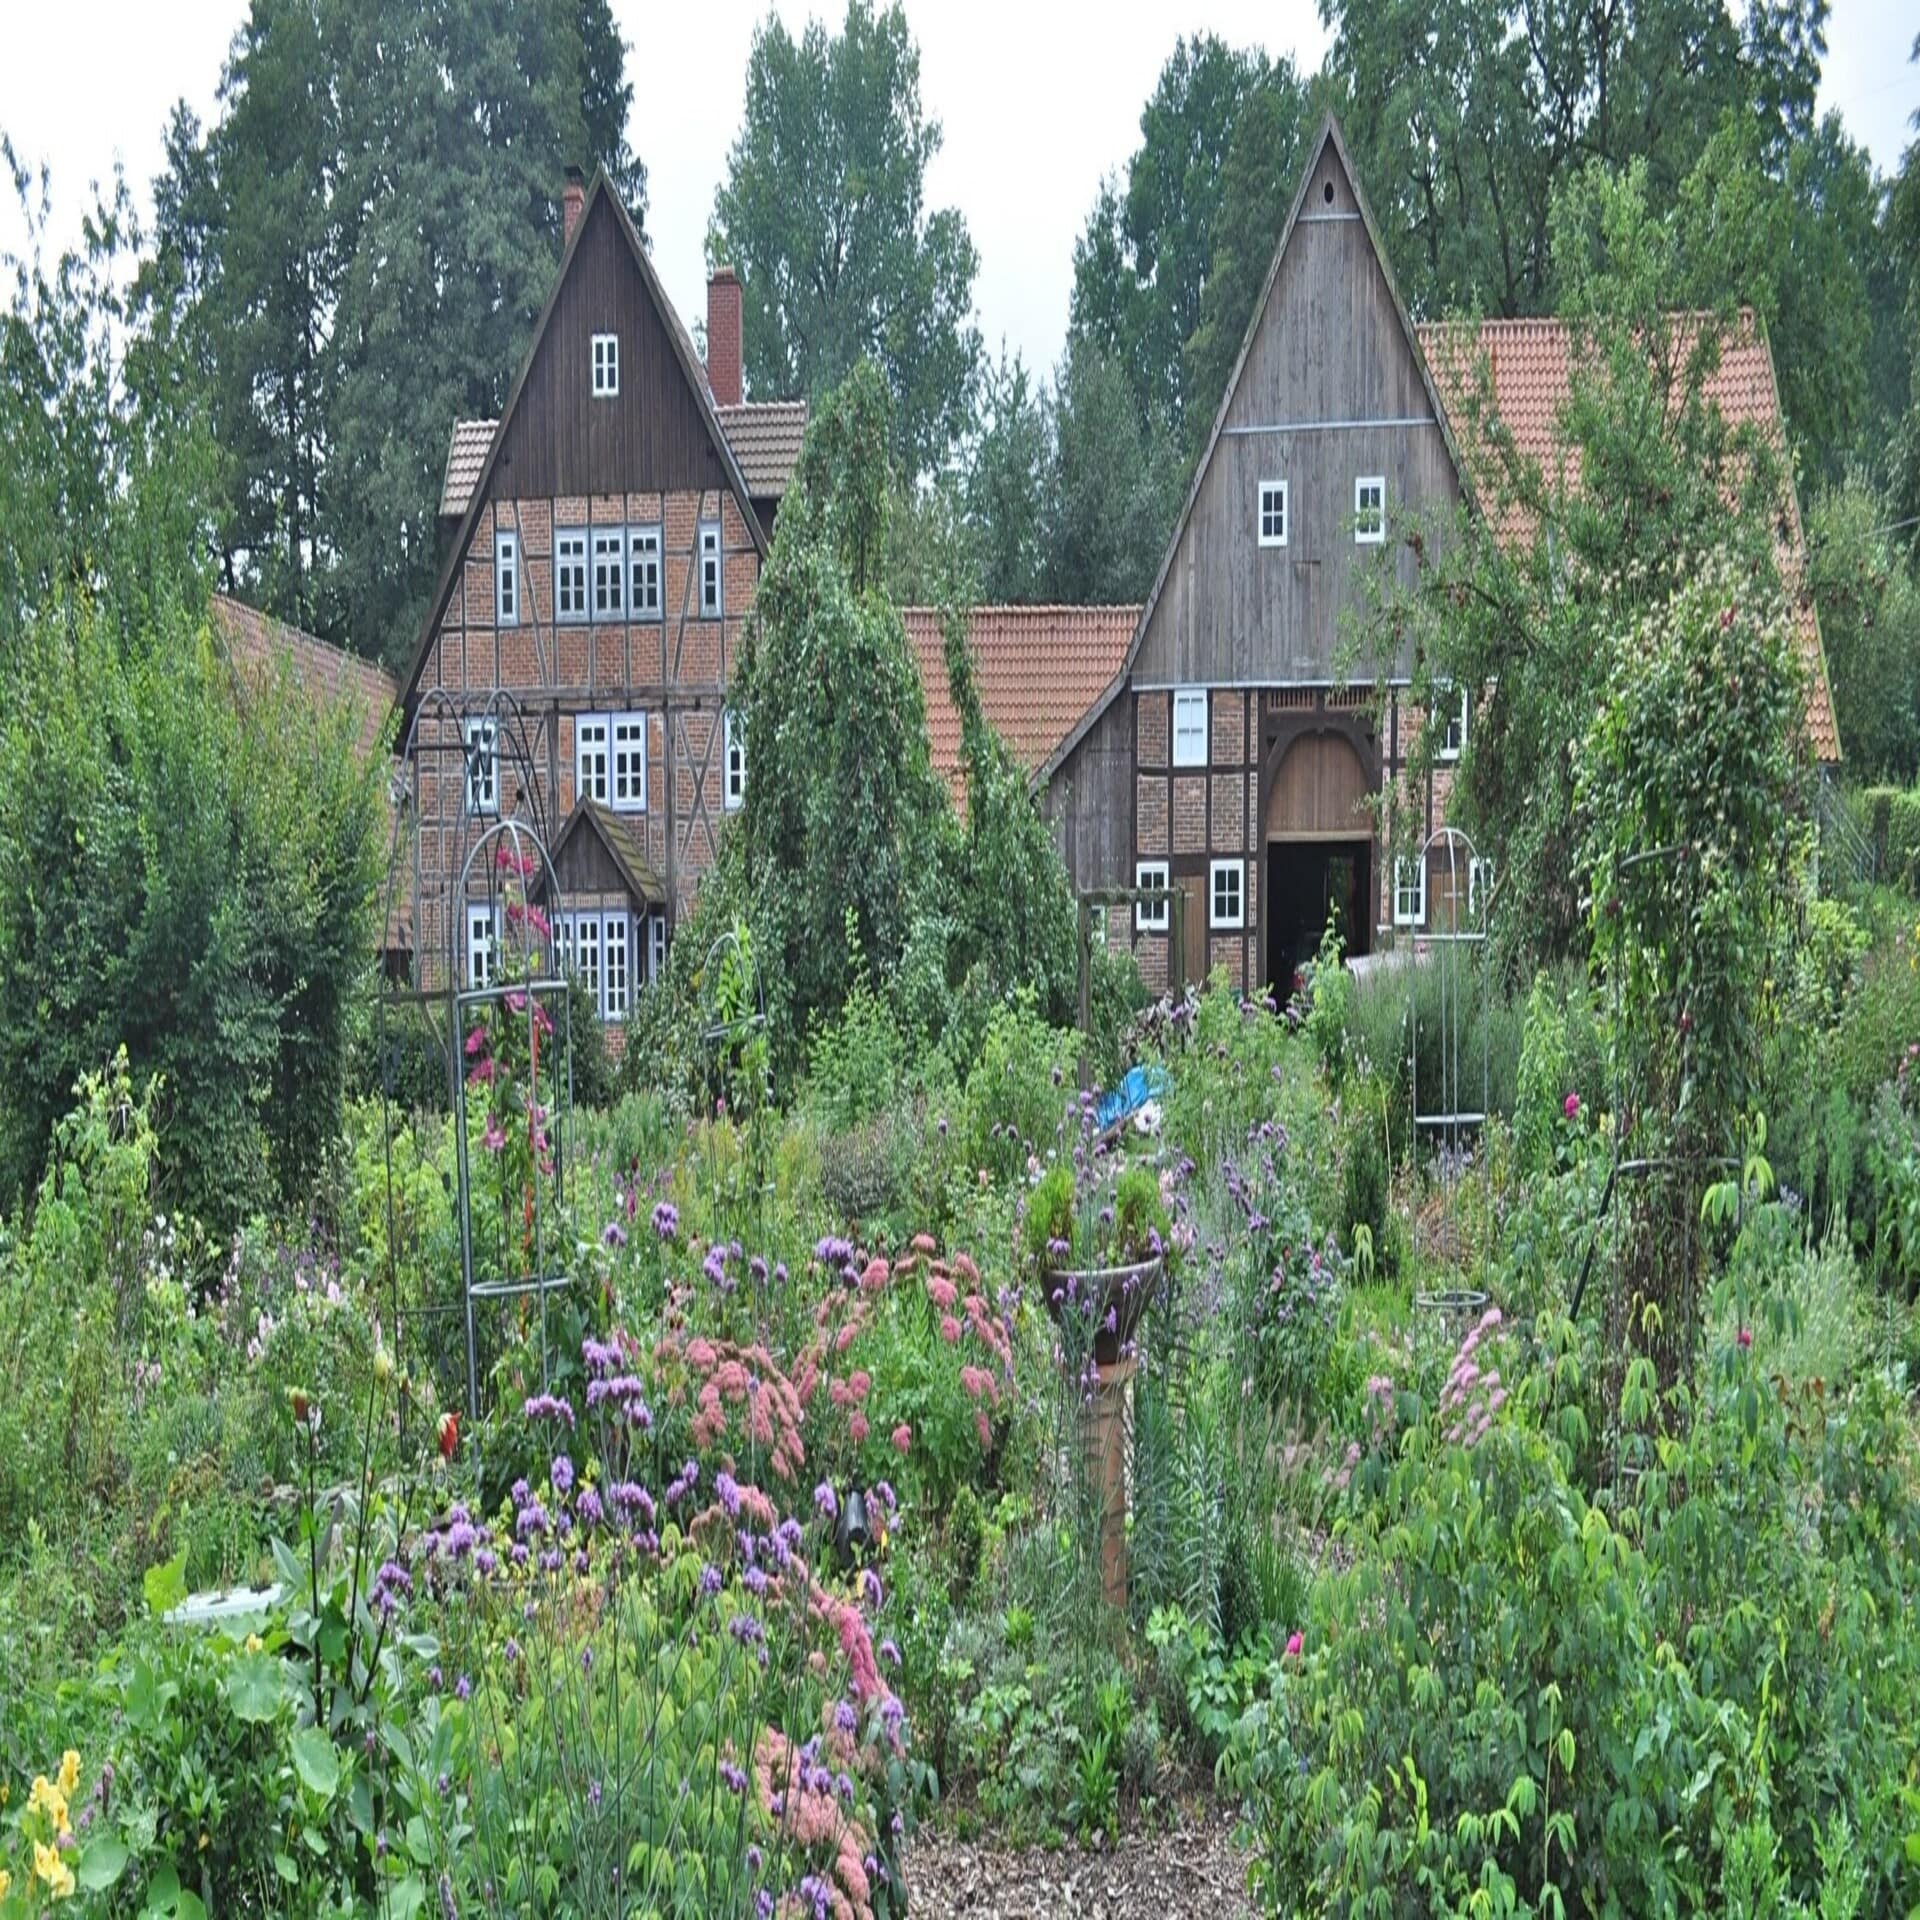 Blick über einen blühenden Nutzgarten auf einen alten Fachwerkbauernhof.